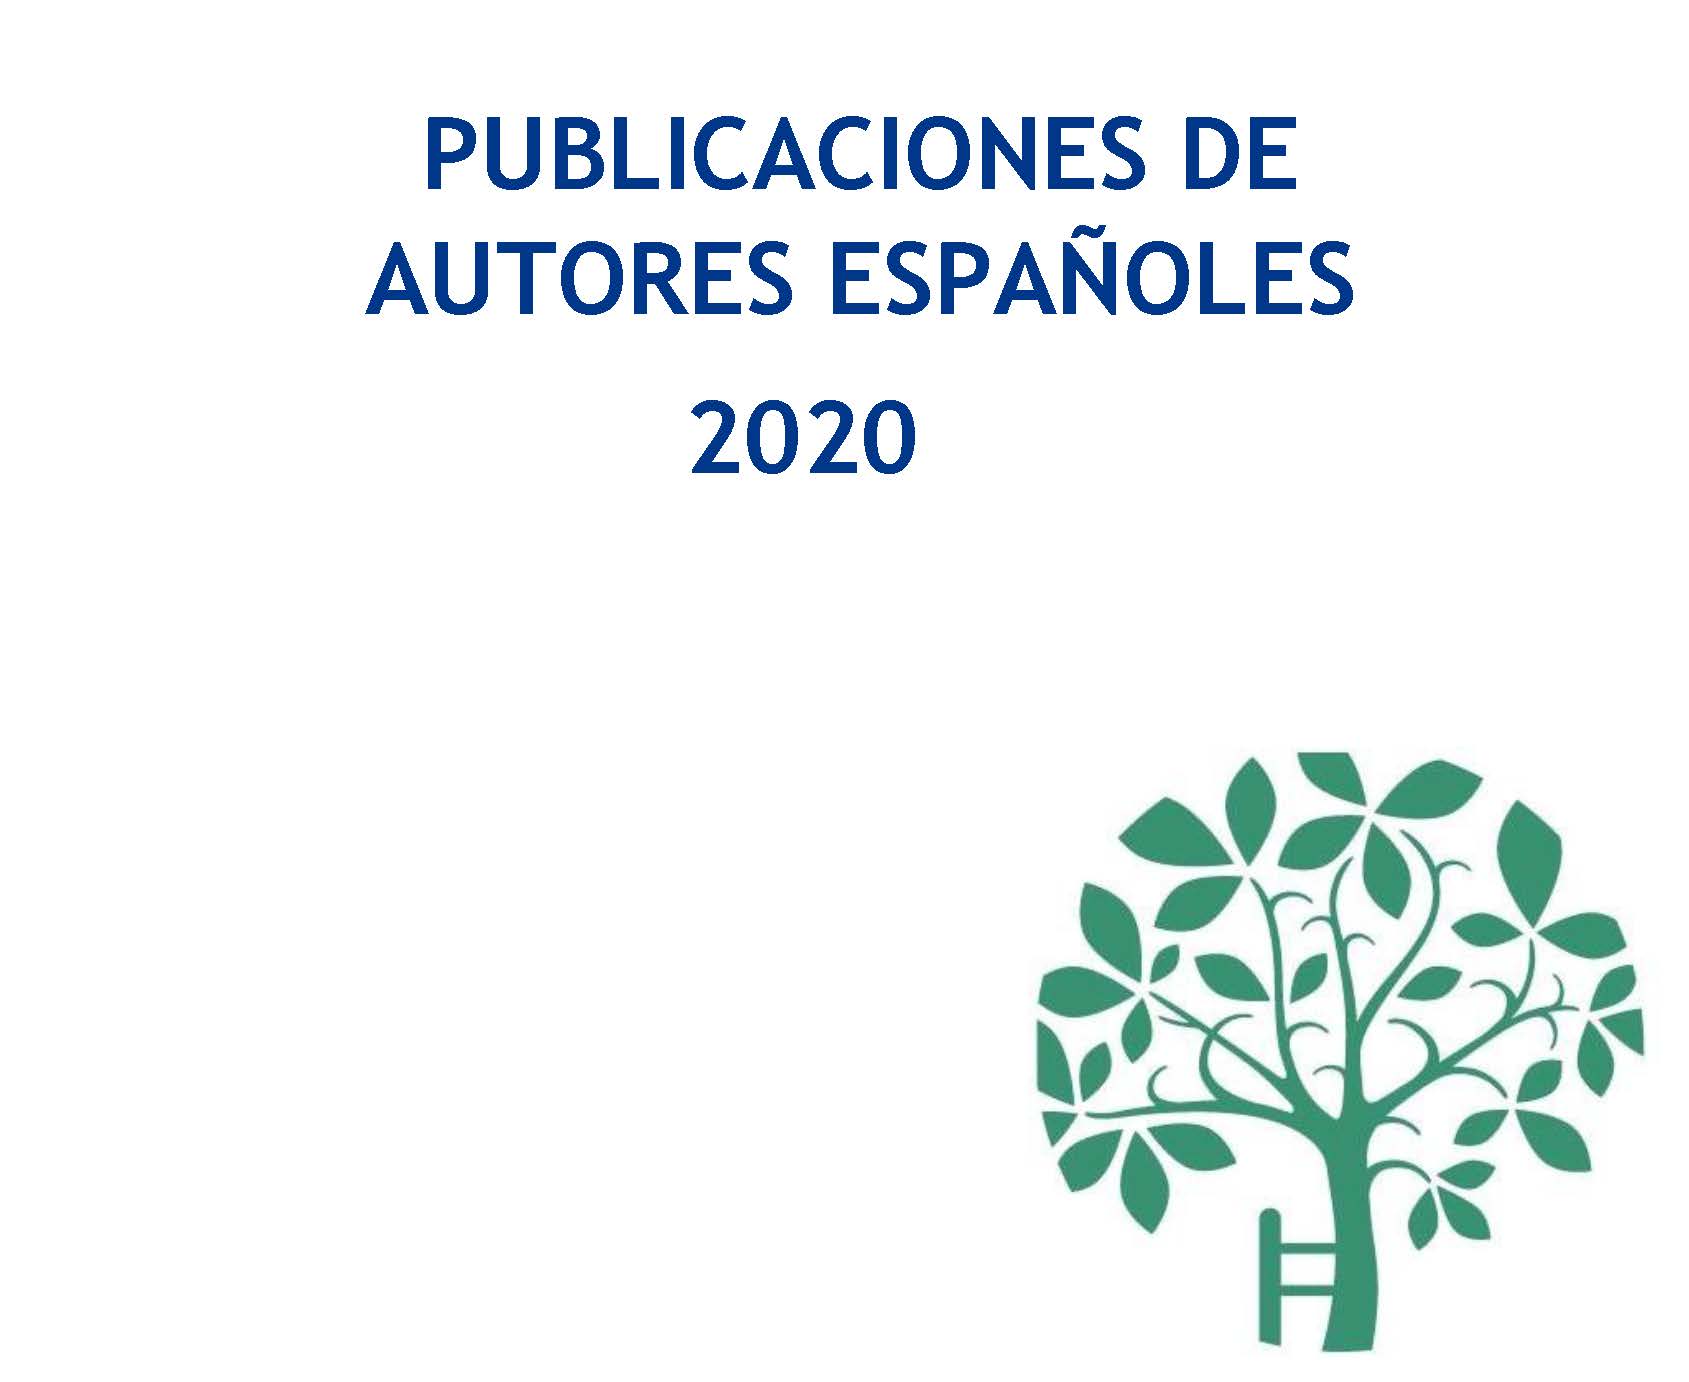 Publicaciones de autores españoles 2020